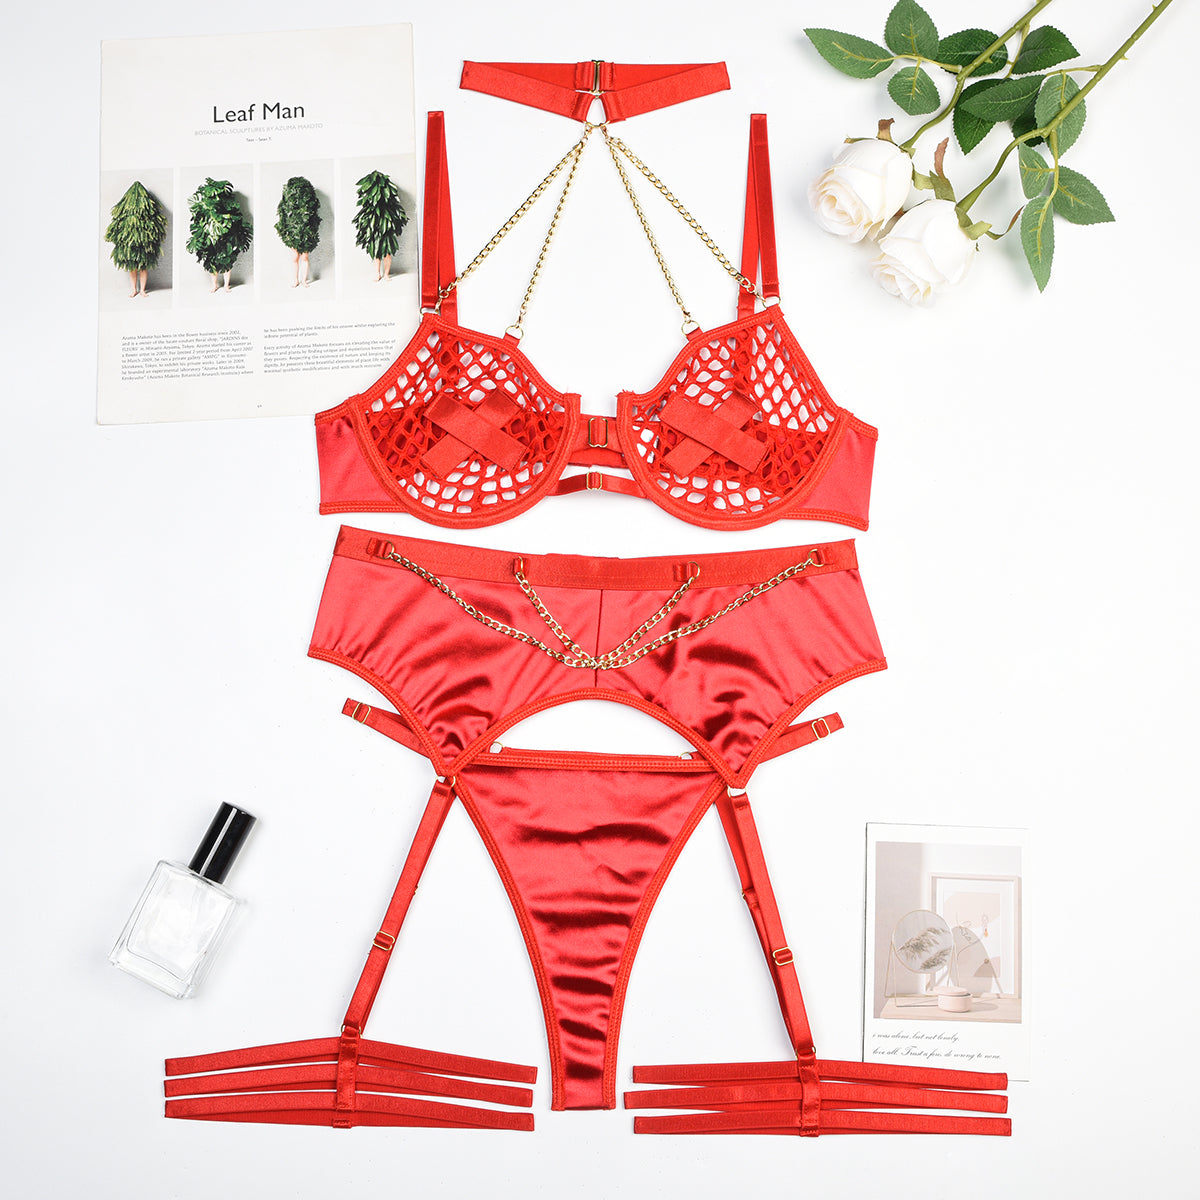 glam temptation: lustrous lingerie set